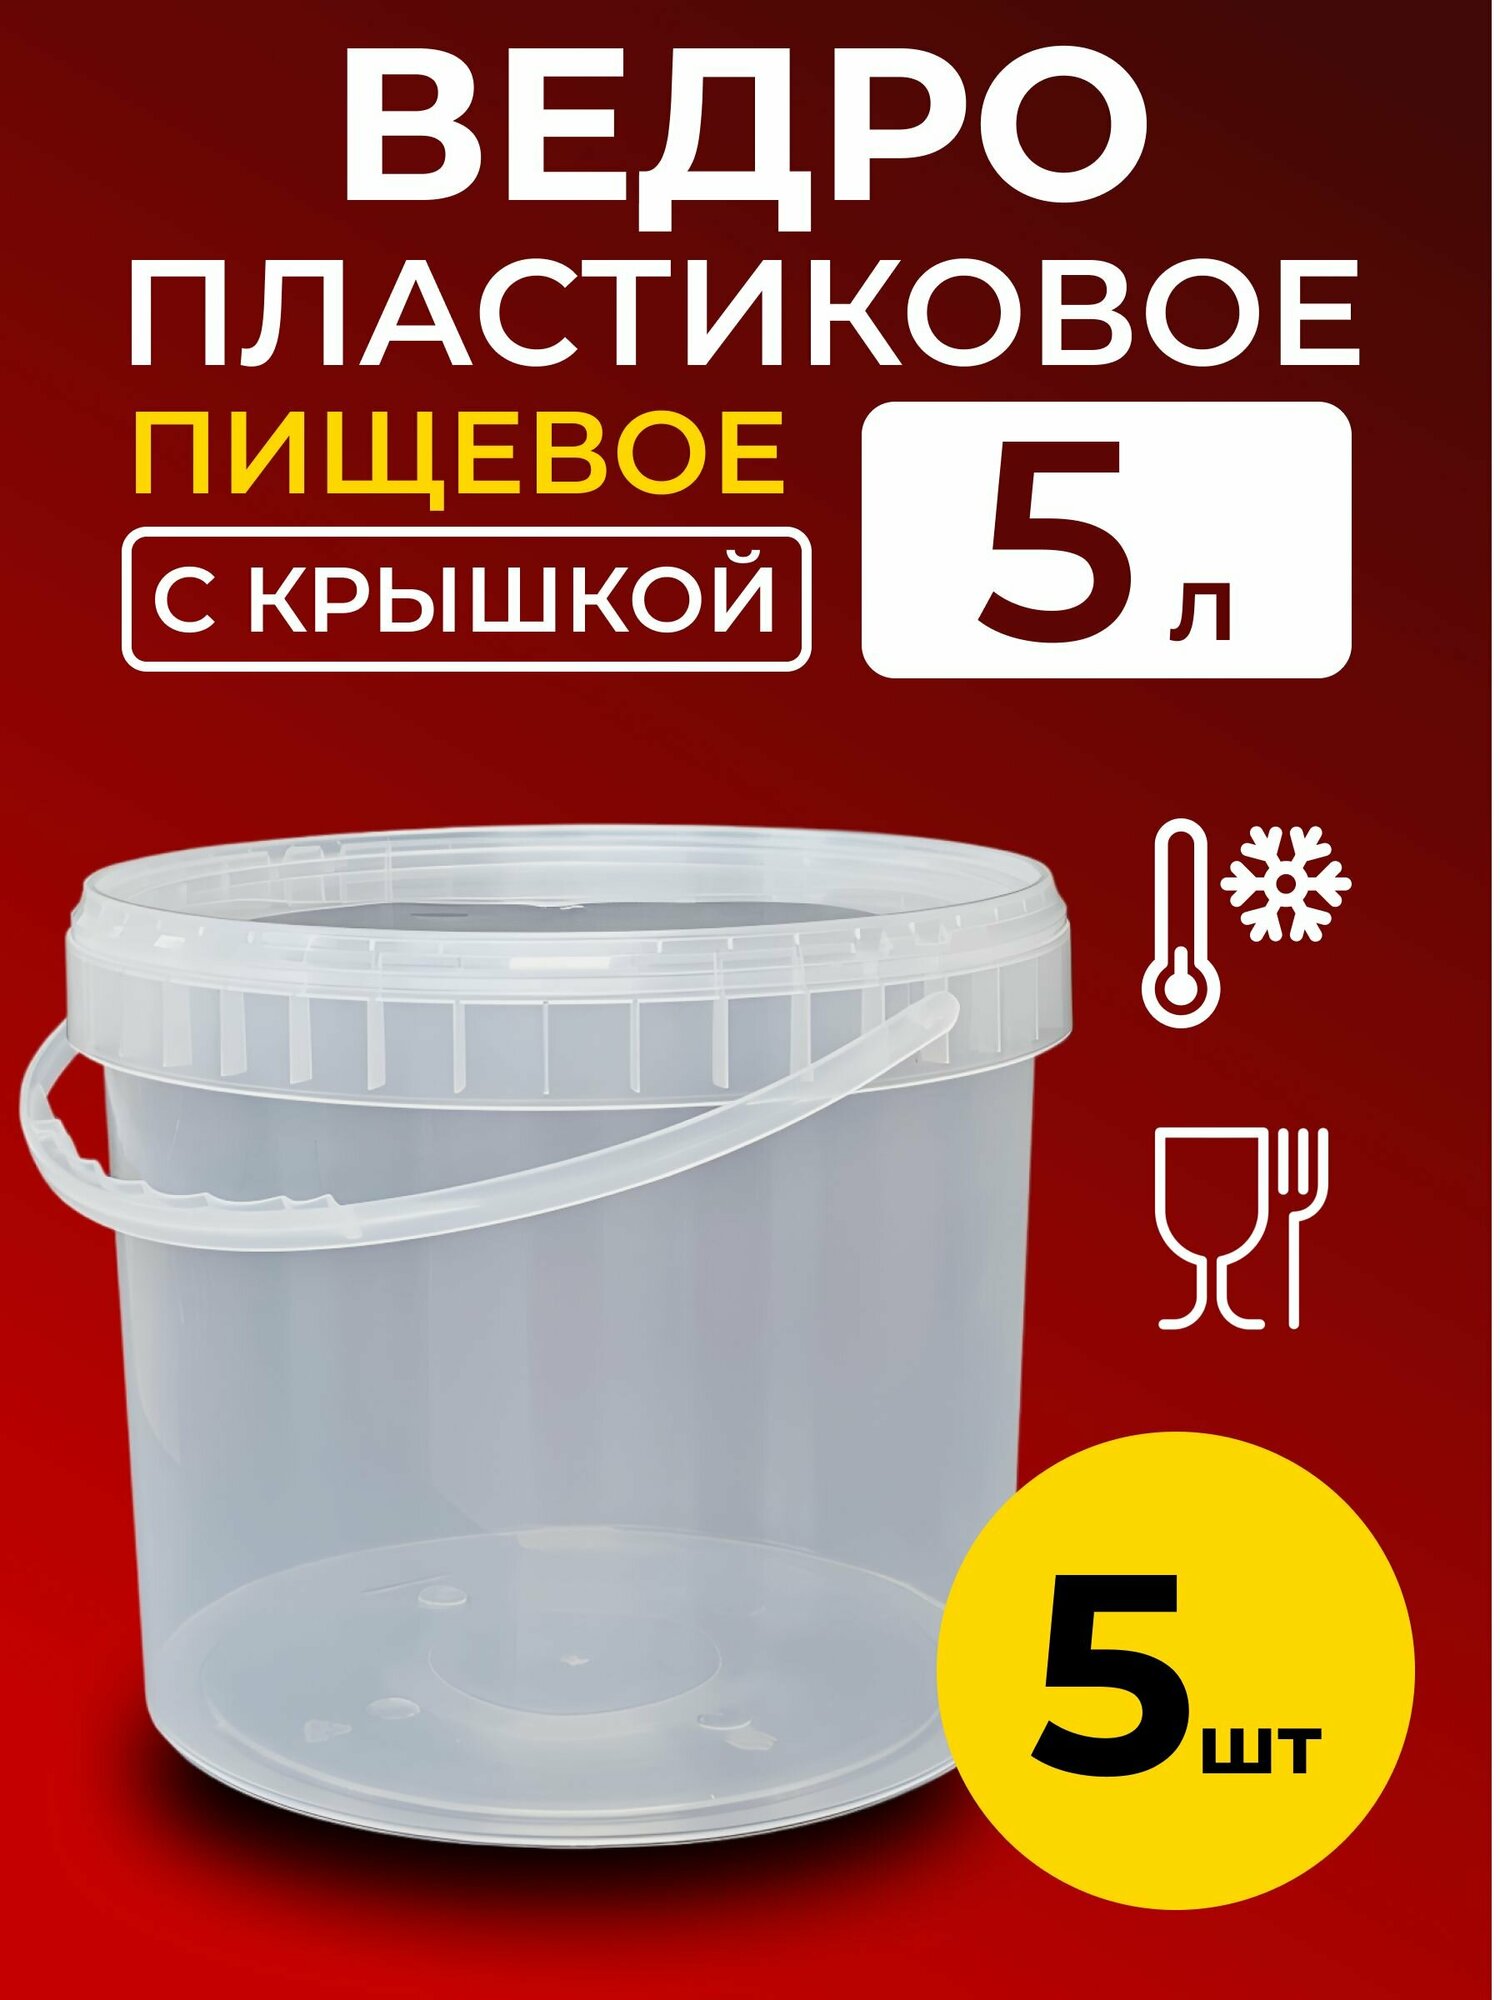 Ведро пластиковое пищевое с крышкой 5л (прозрачное), 5 шт.